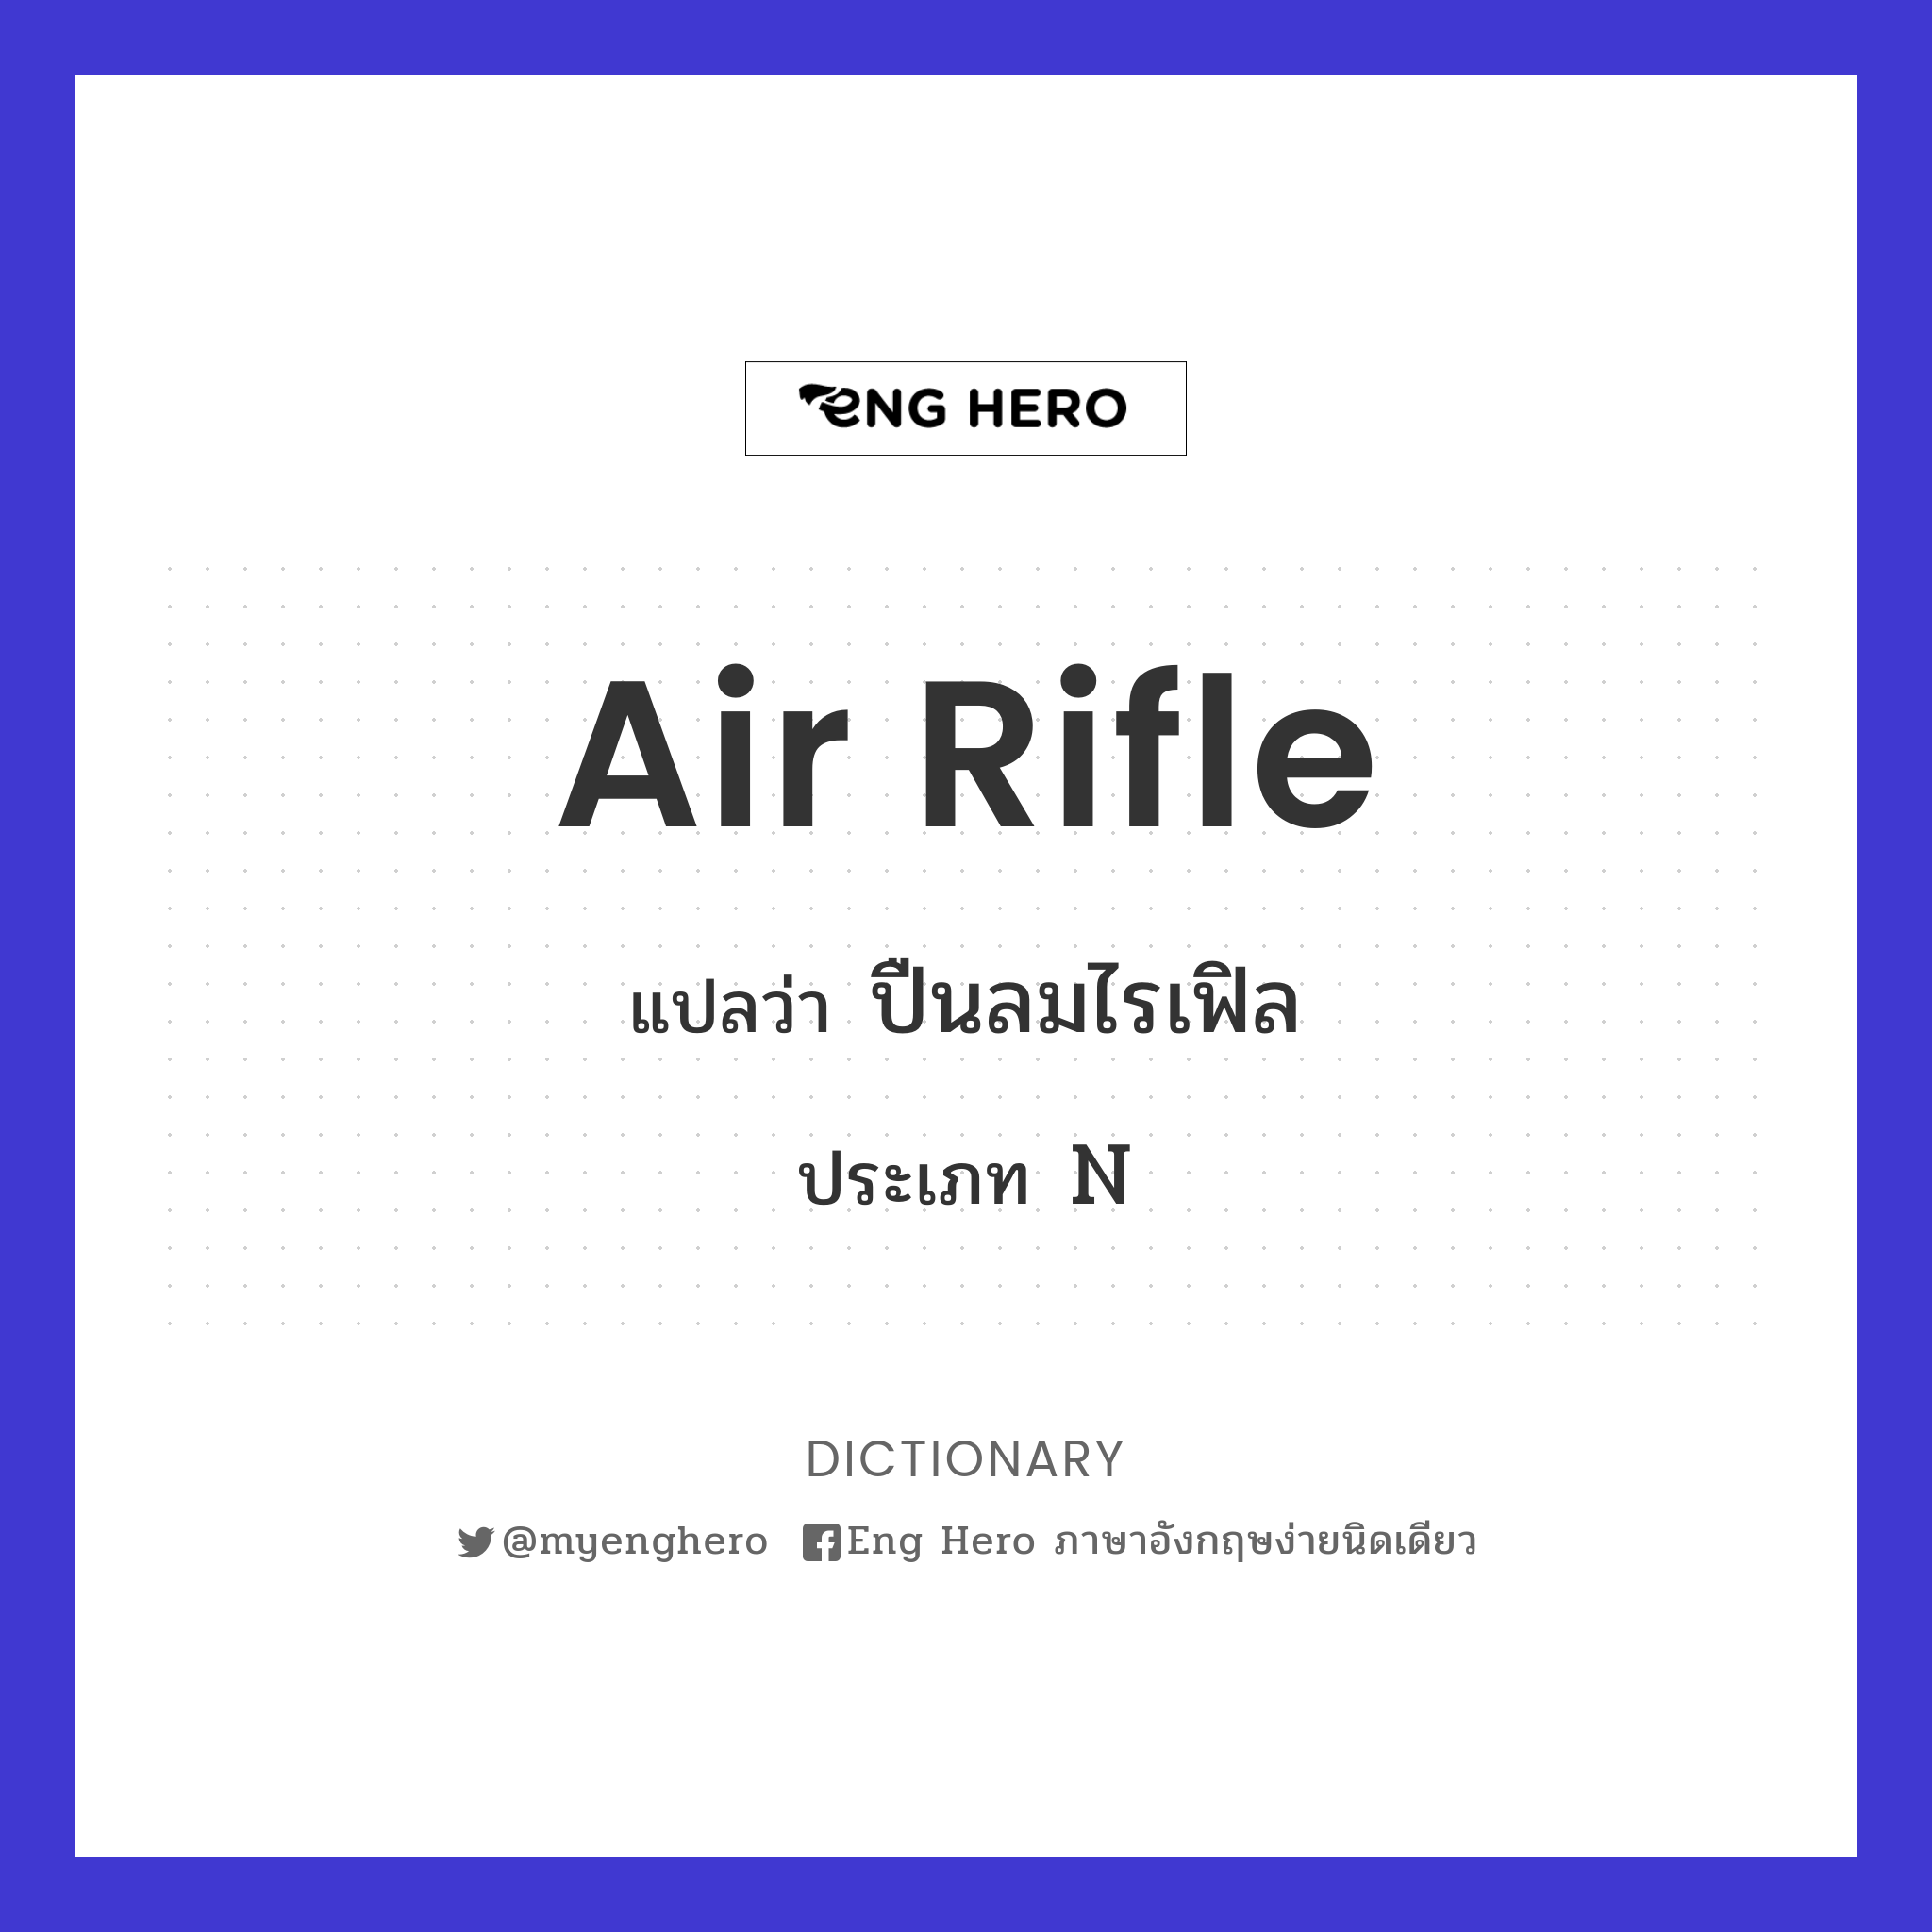 air rifle